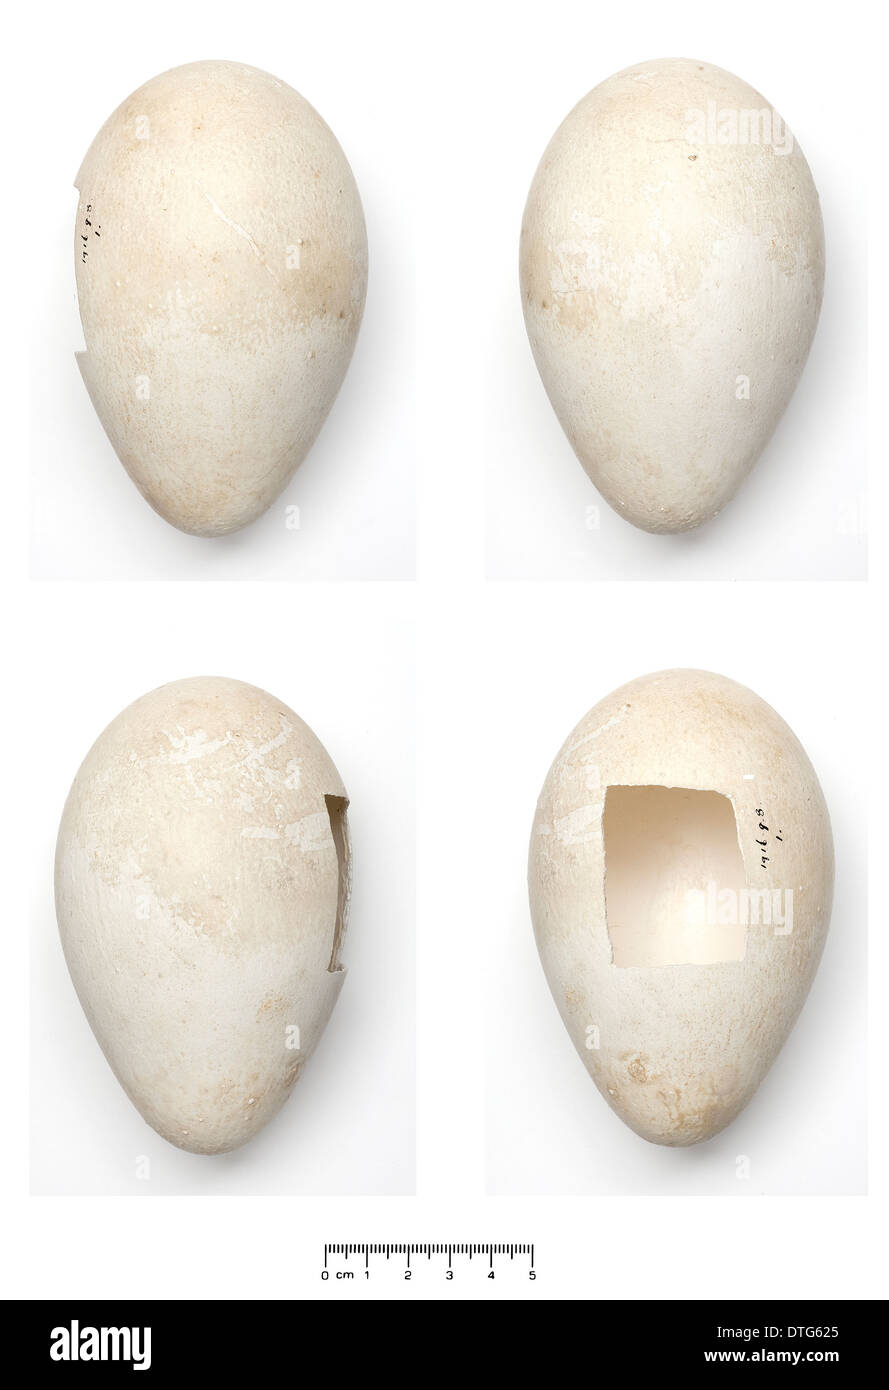 Aptenodytes forsteri, manchot empereur egg Banque D'Images